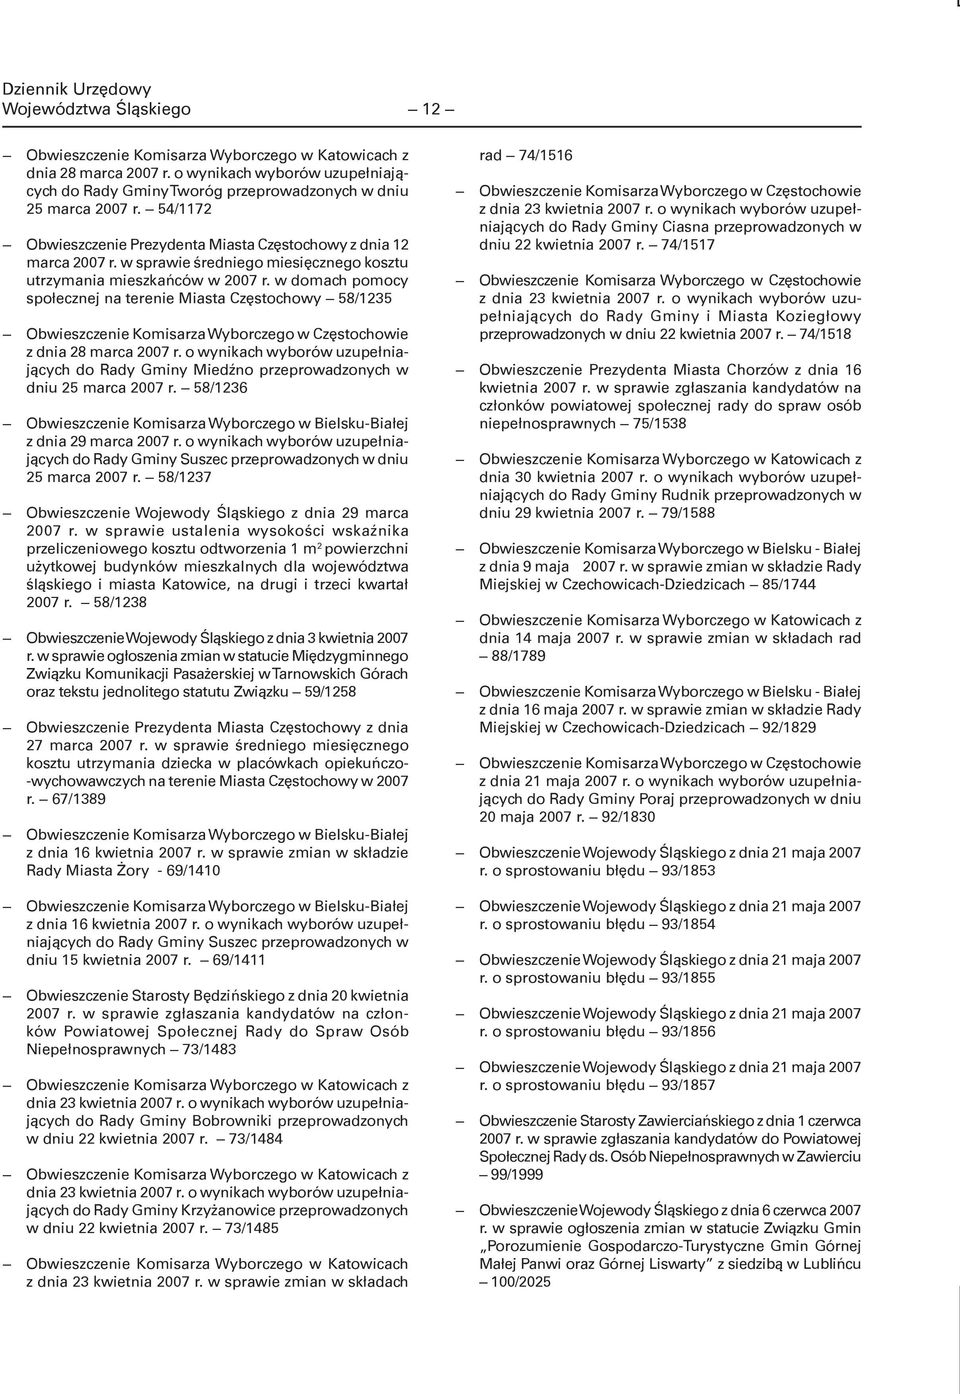 w domach pomocy społecznej na terenie Miasta Częstochowy 58/1235 Obwieszczenie Komisarza Wyborczego w Częstochowie z dnia 28 marca 2007 r.